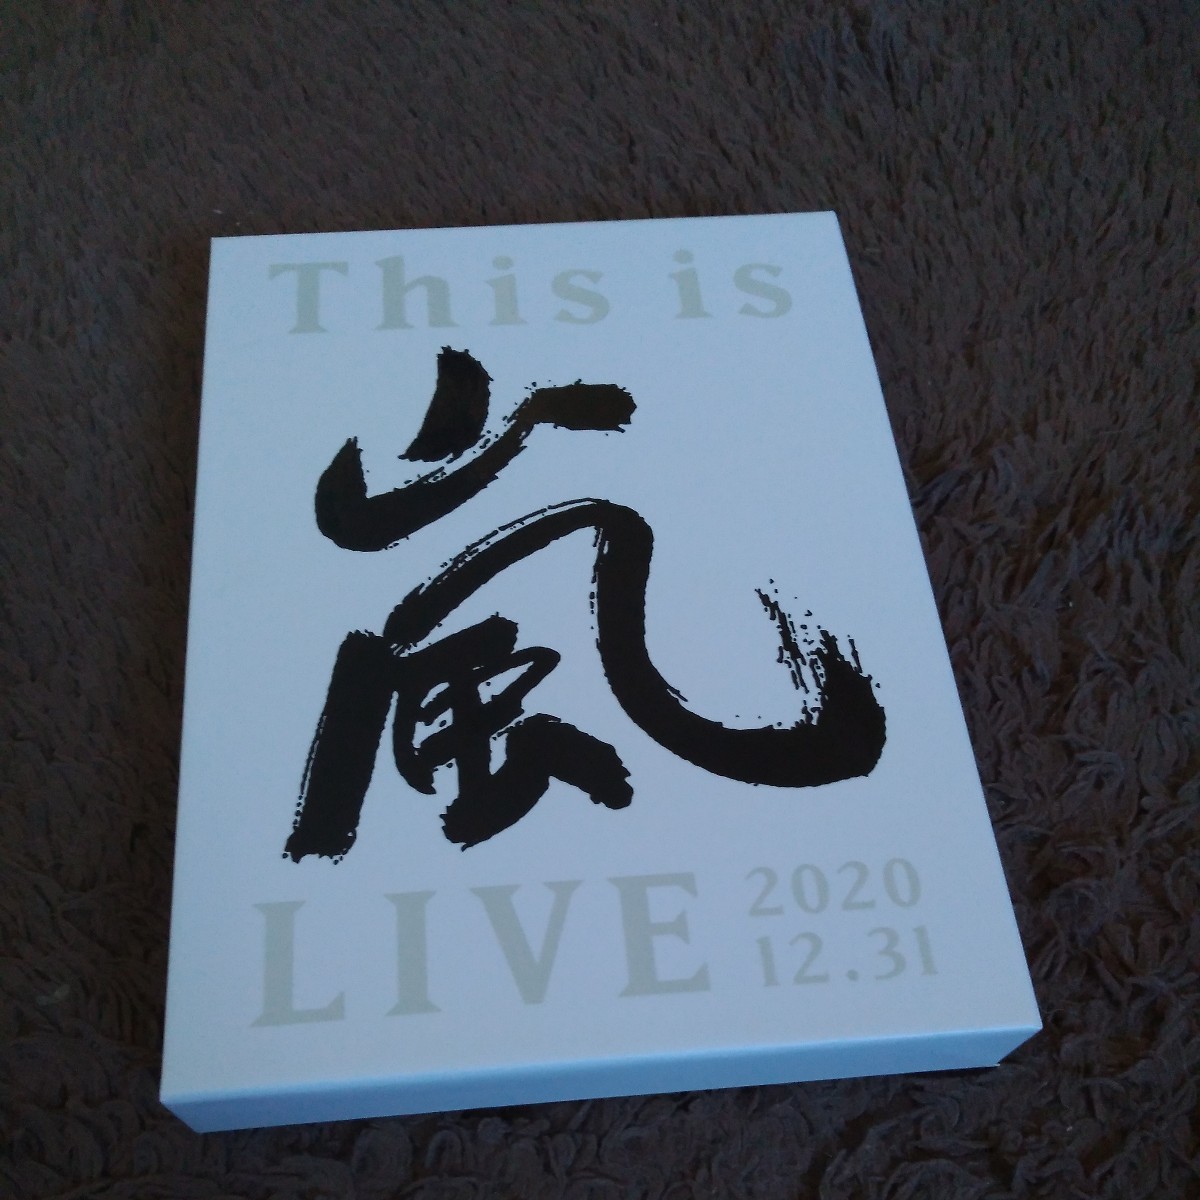 嵐 DVD This is 嵐 LIVE 2020.12.31 初回限定盤 3枚組 ARASHI _画像1